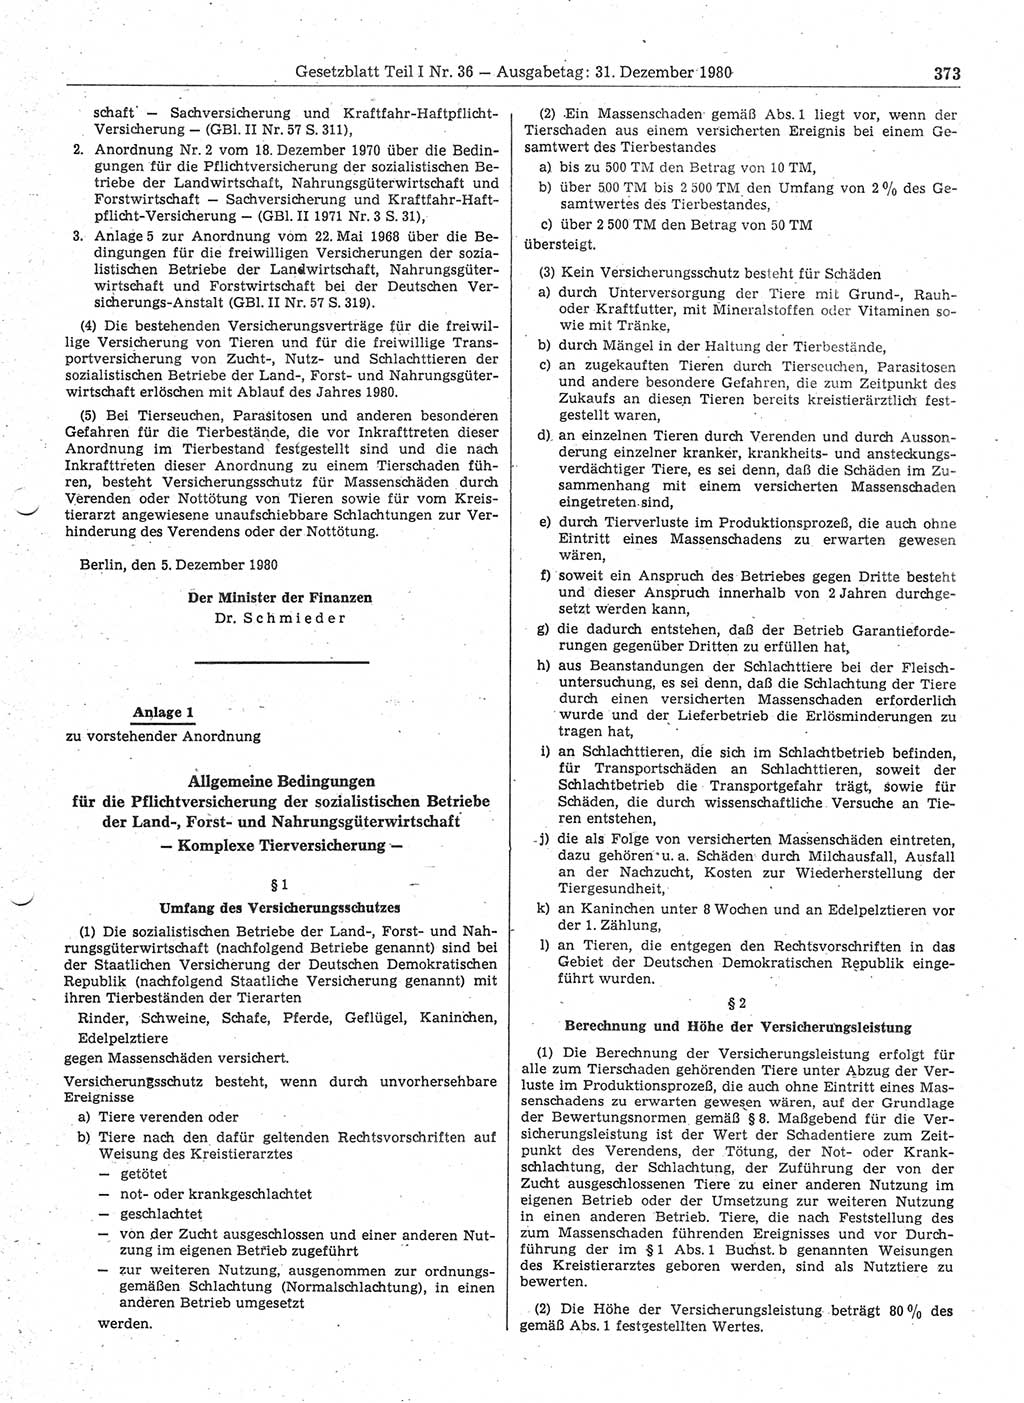 Gesetzblatt (GBl.) der Deutschen Demokratischen Republik (DDR) Teil Ⅰ 1980, Seite 373 (GBl. DDR Ⅰ 1980, S. 373)